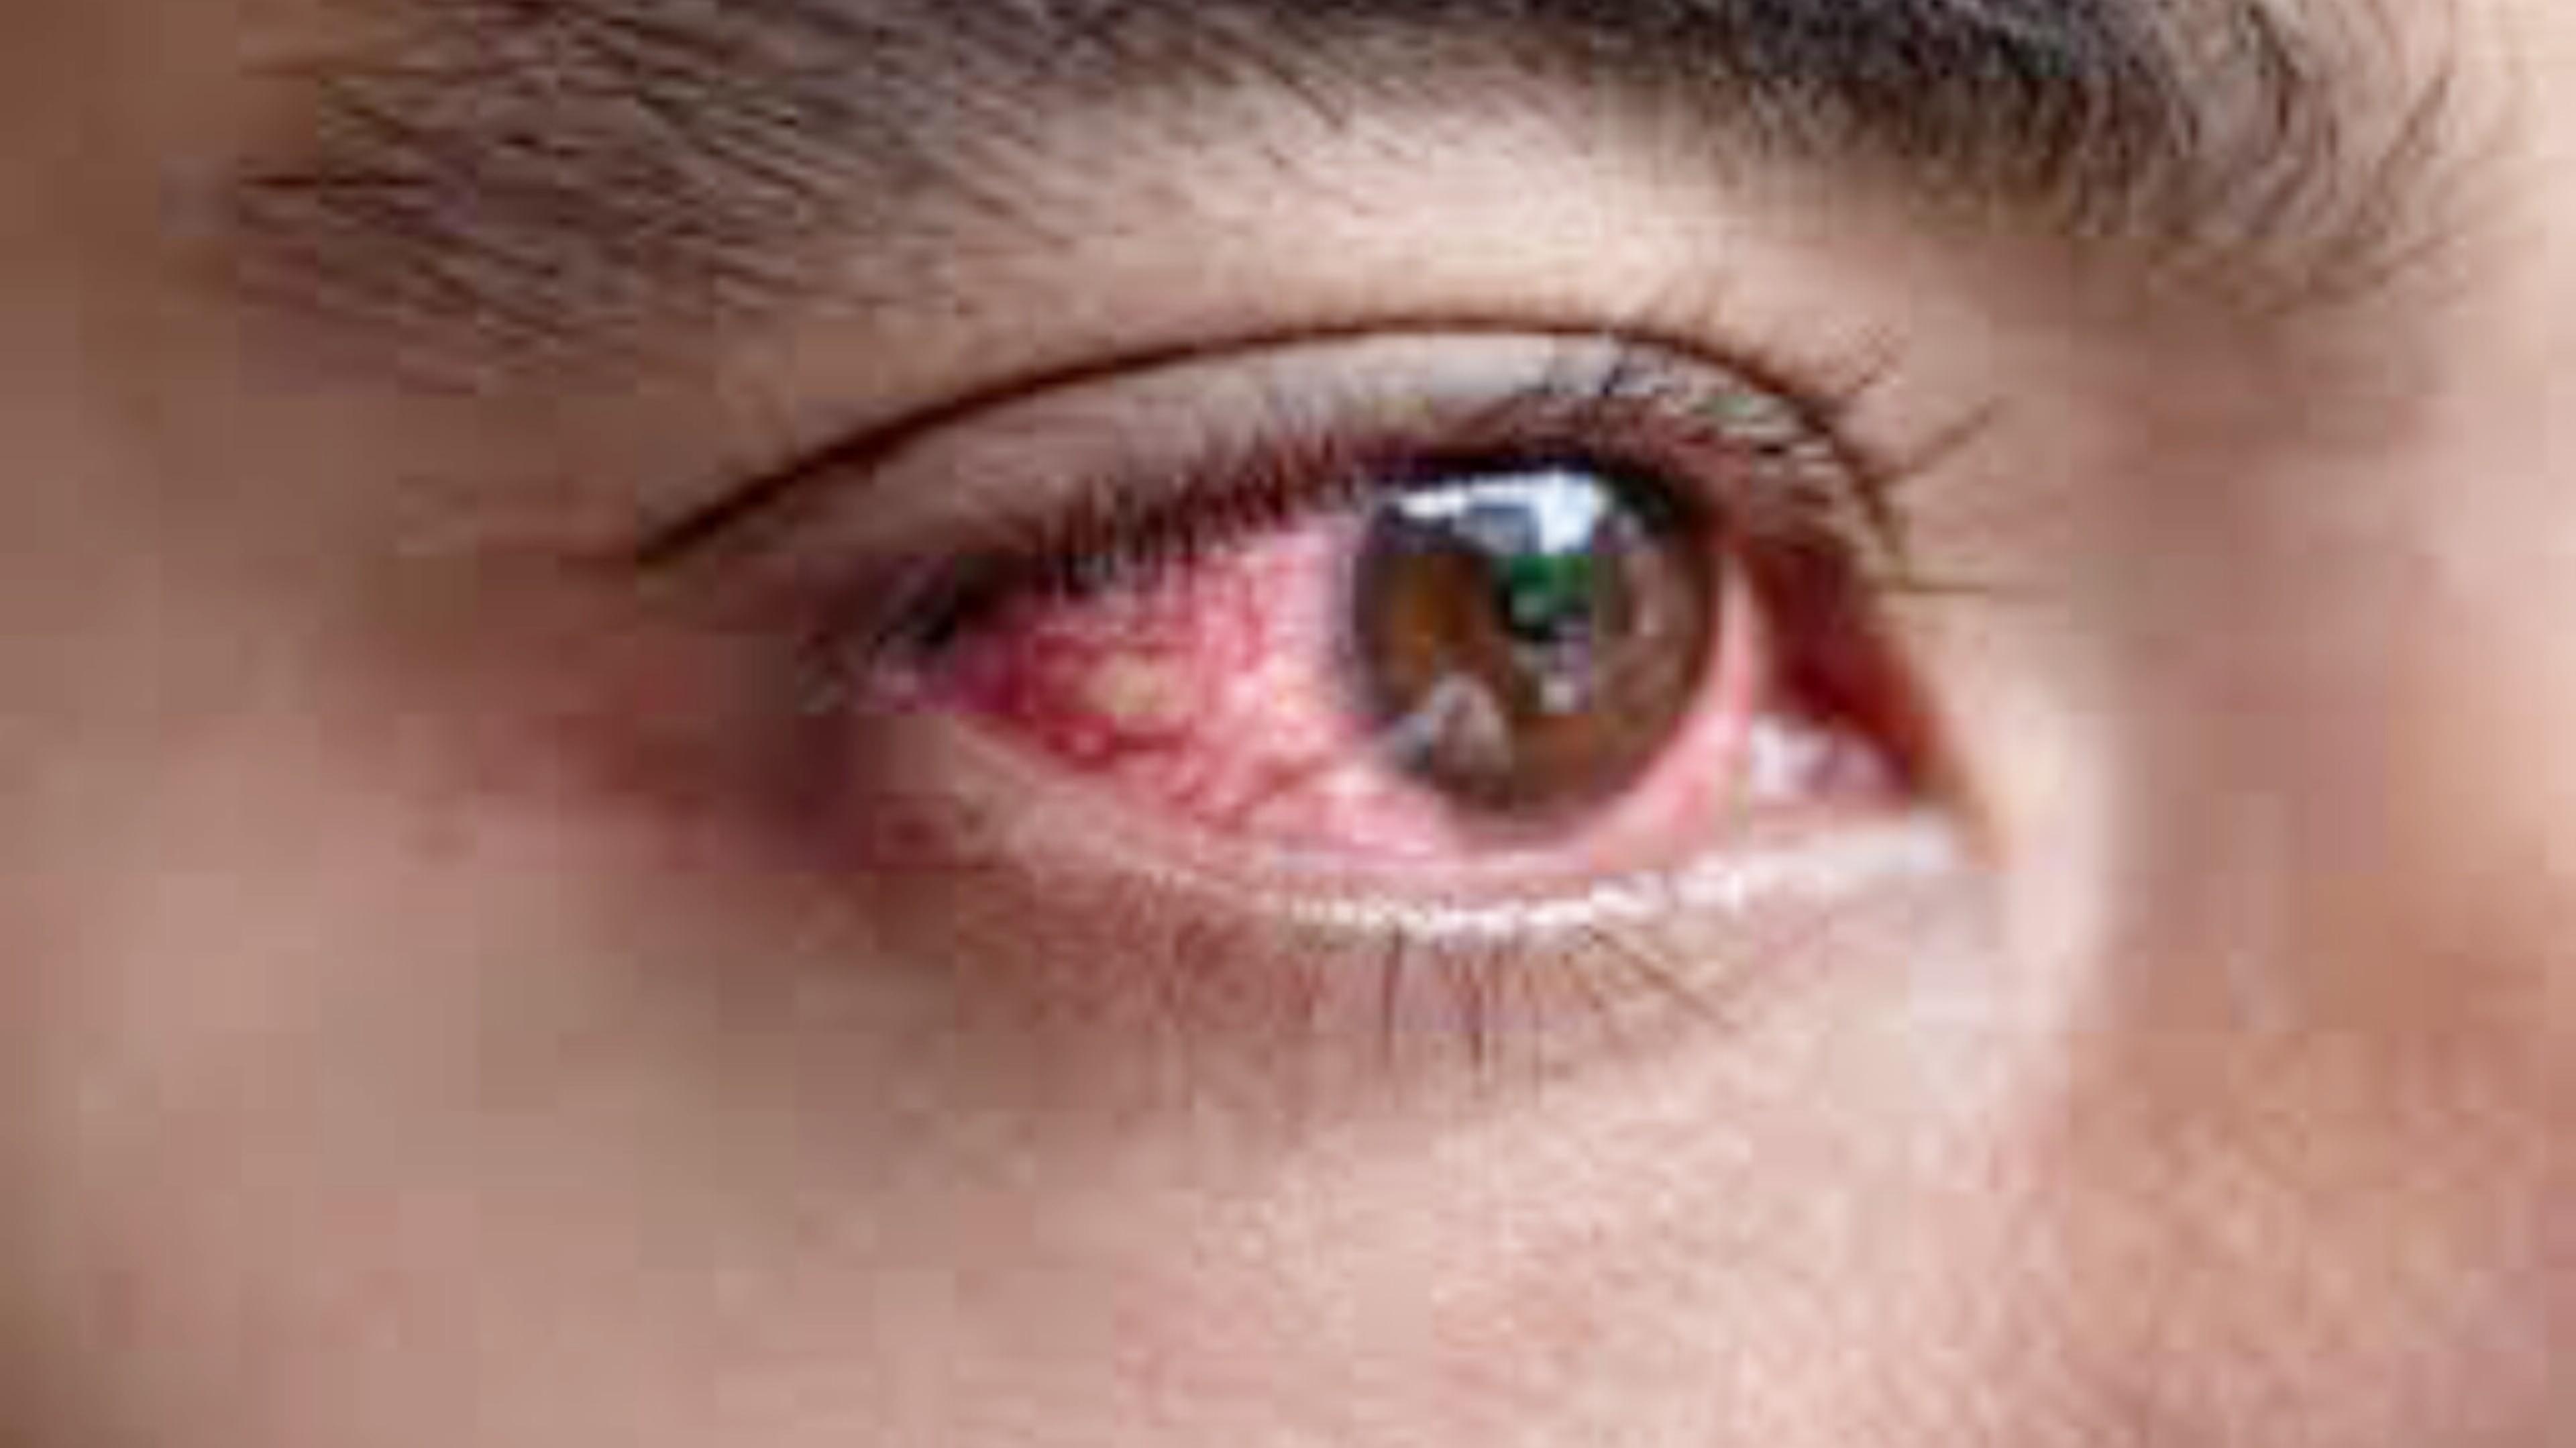 Kanpur Eye Flu: तेजी से पांव पसार रहा ‘आई फ्लू’, इन्फेक्शन से बचने के लिए “क्या
करें और क्या ना करें”